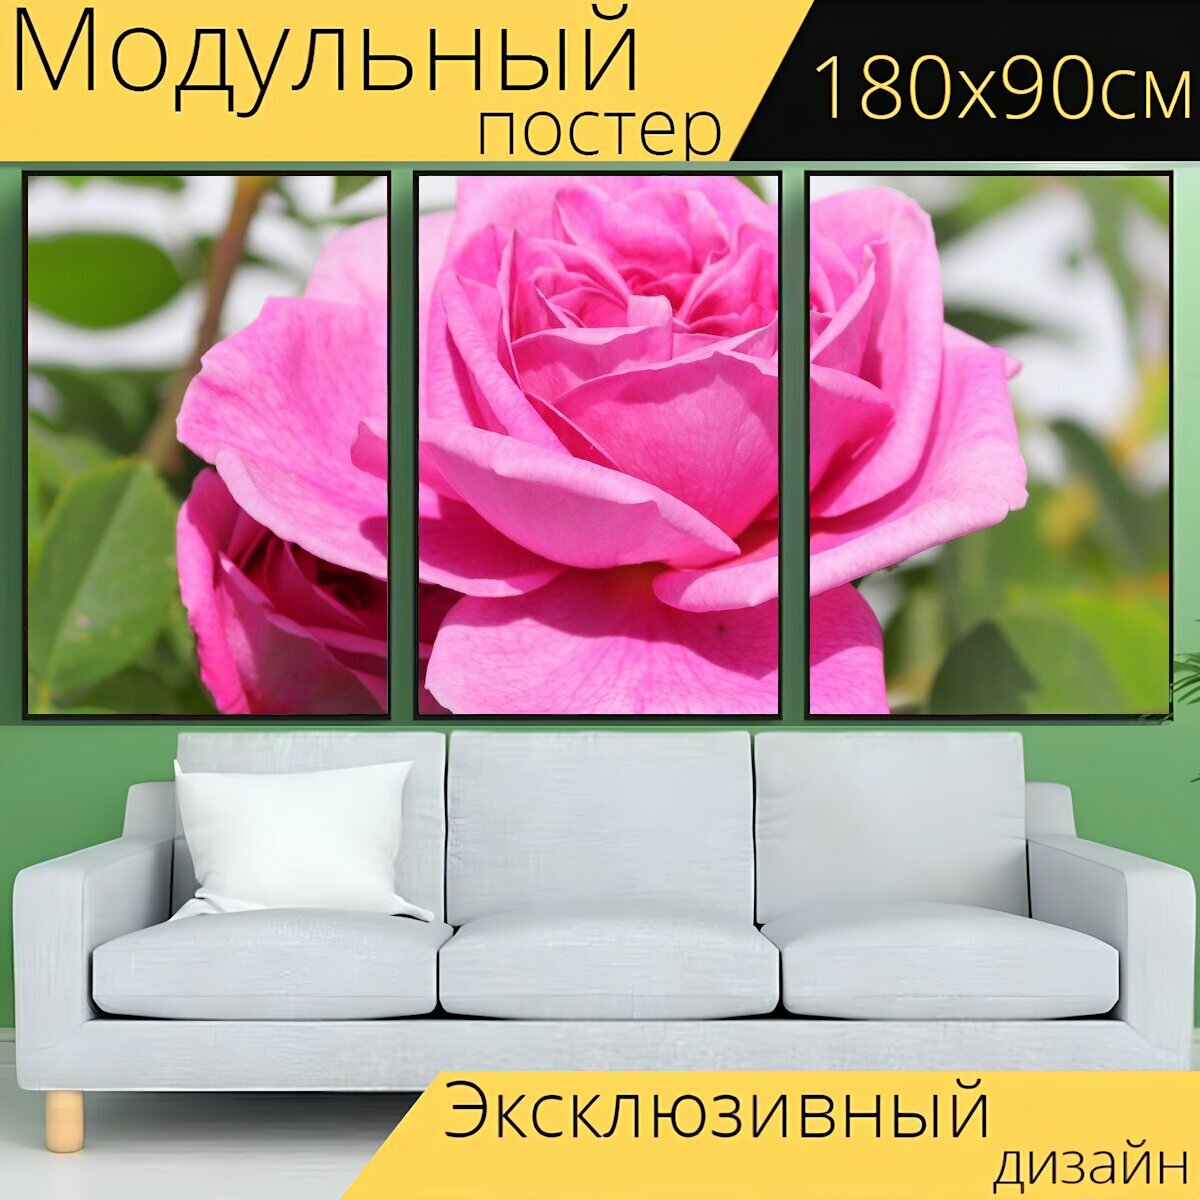 Модульный постер "Роза, розовая роза, розовые лепестки" 180 x 90 см. для интерьера